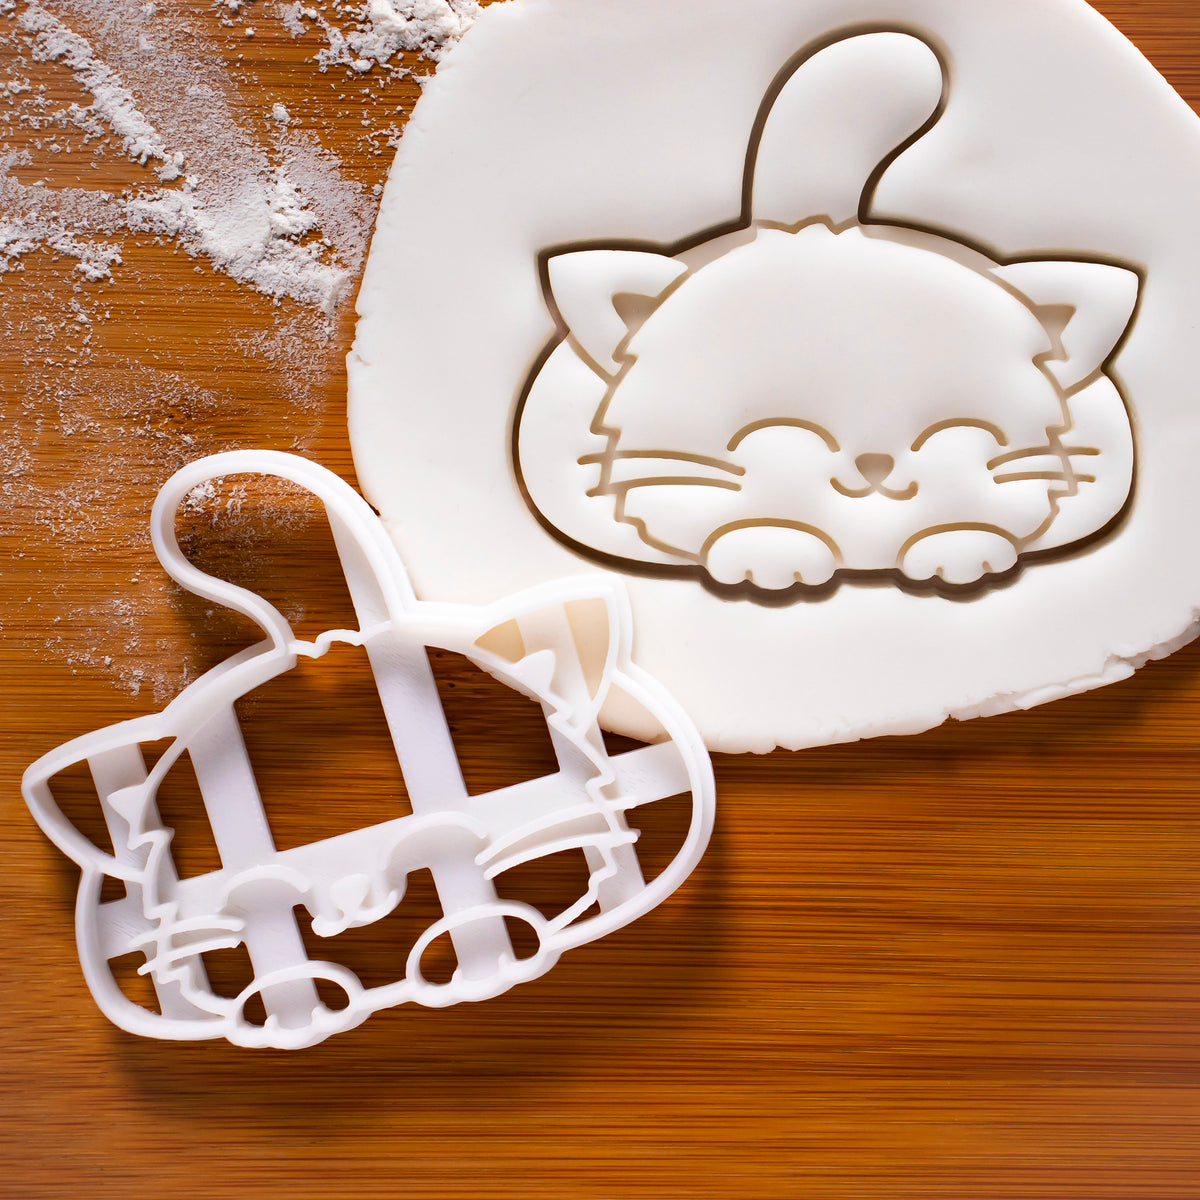 Cute smiley cat cookie cutter